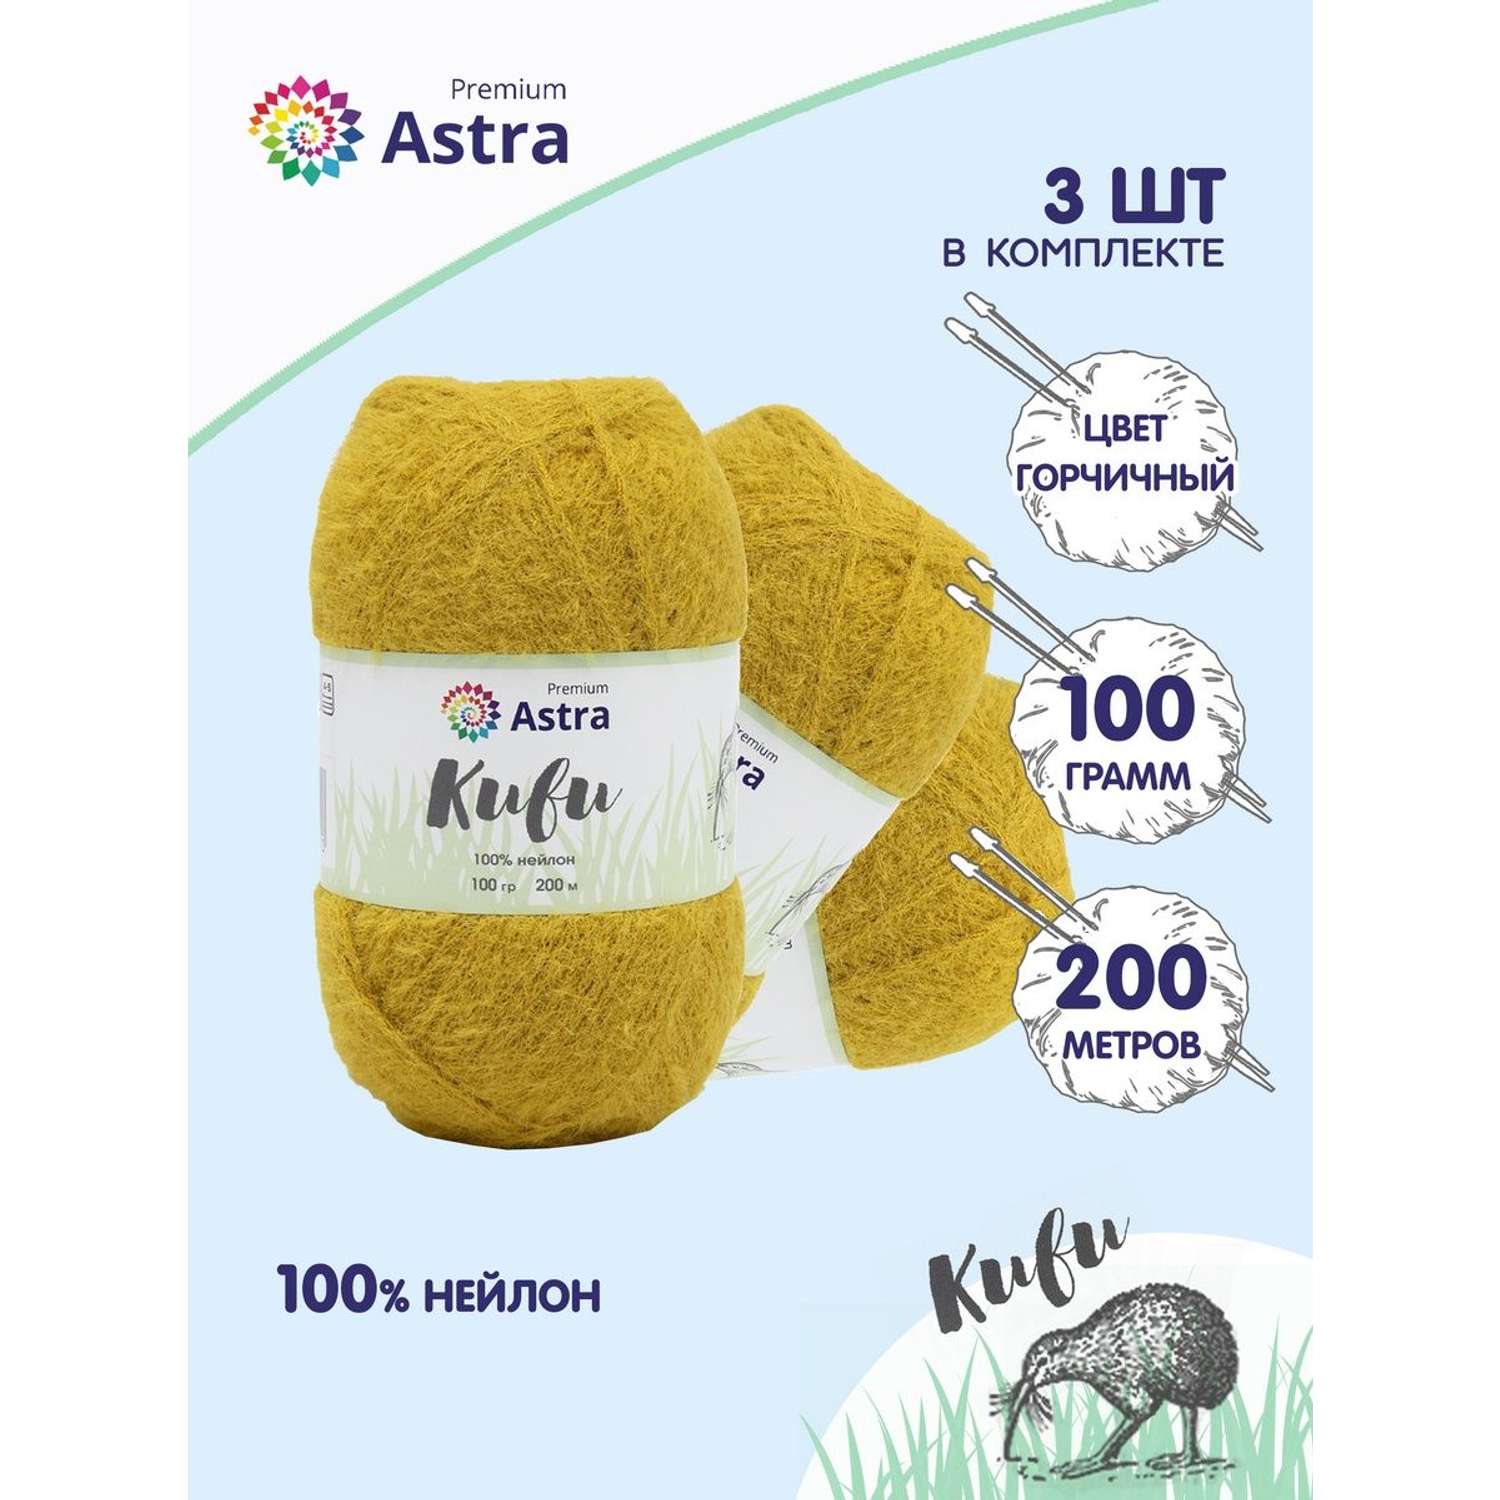 Пряжа для вязания Astra Premium киви фантазийная с выраженным ворсом киви нейлон 100 гр 200 м 04 горчичный 3 мотка - фото 1